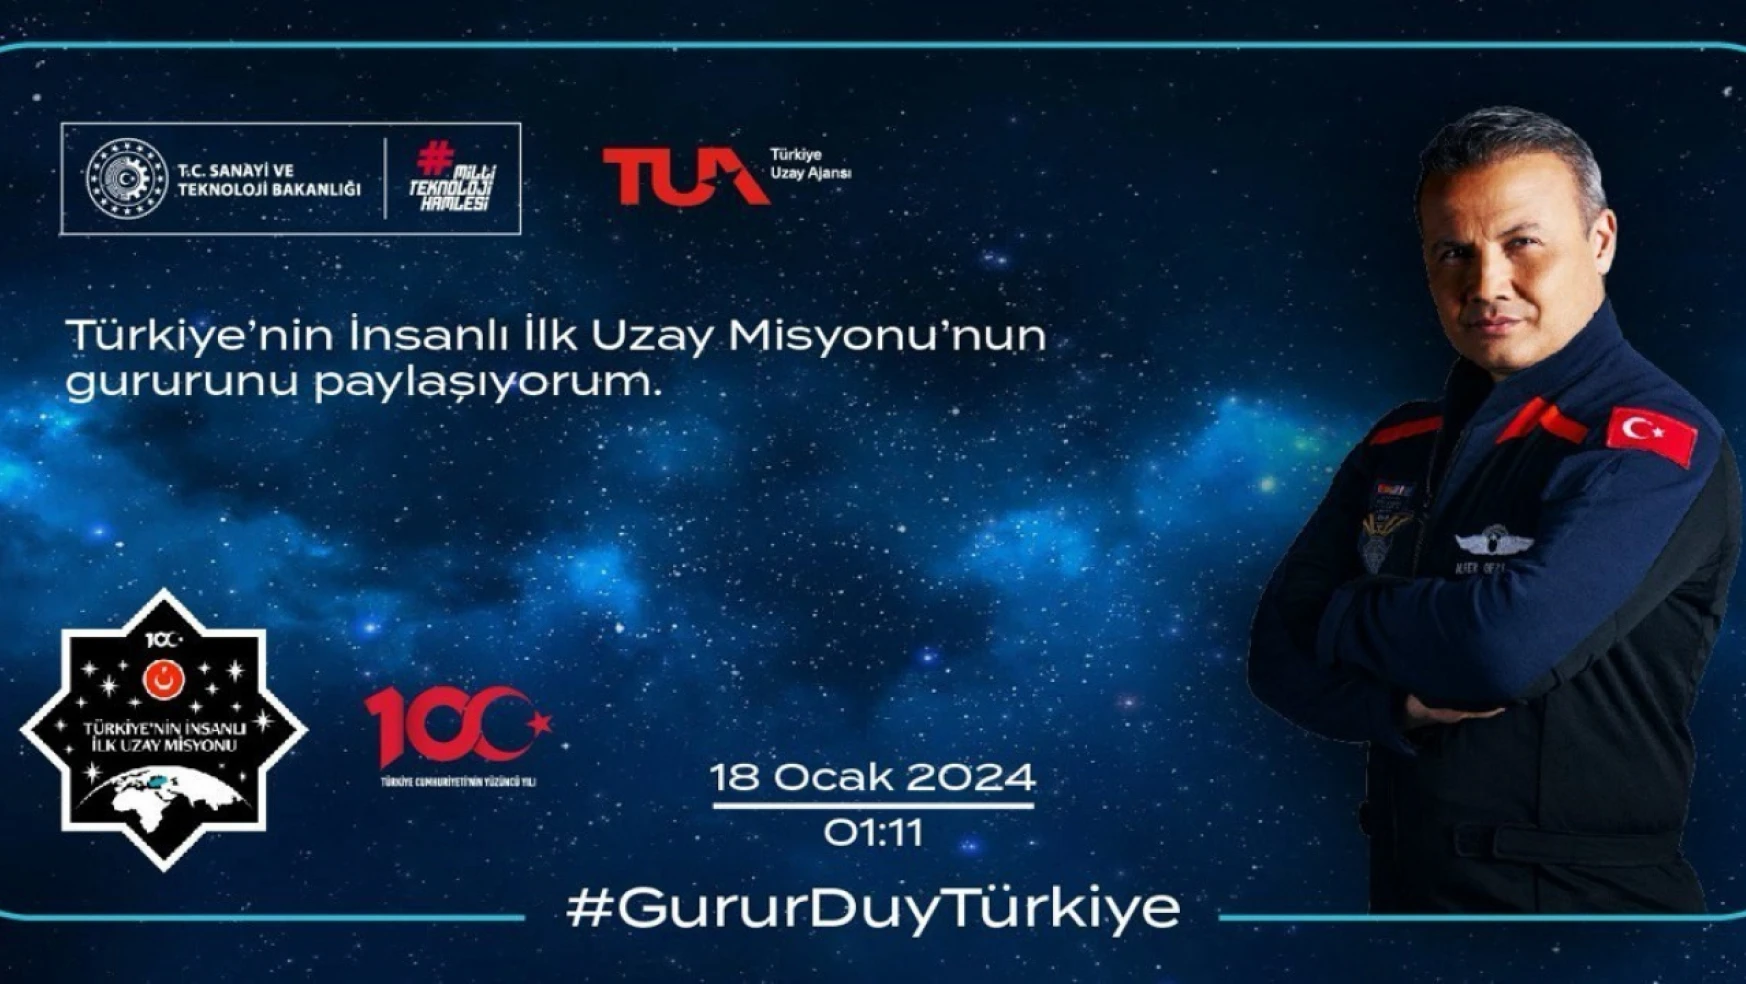 Türkiye'nin insanlı ilk uzay misyonu için hatıra bileti